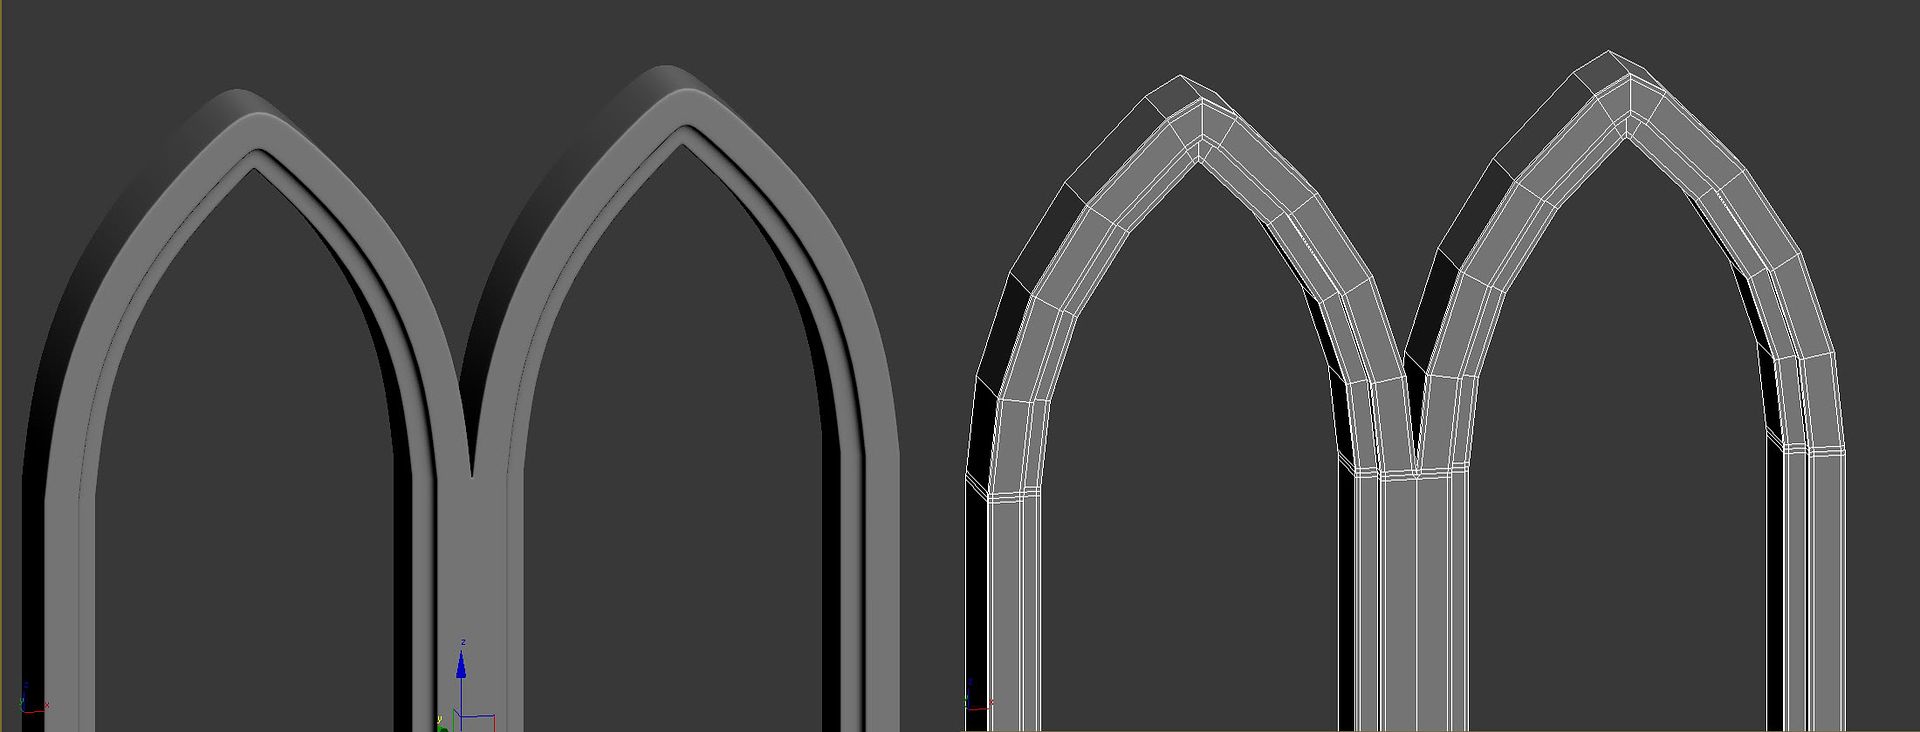 arches.jpg